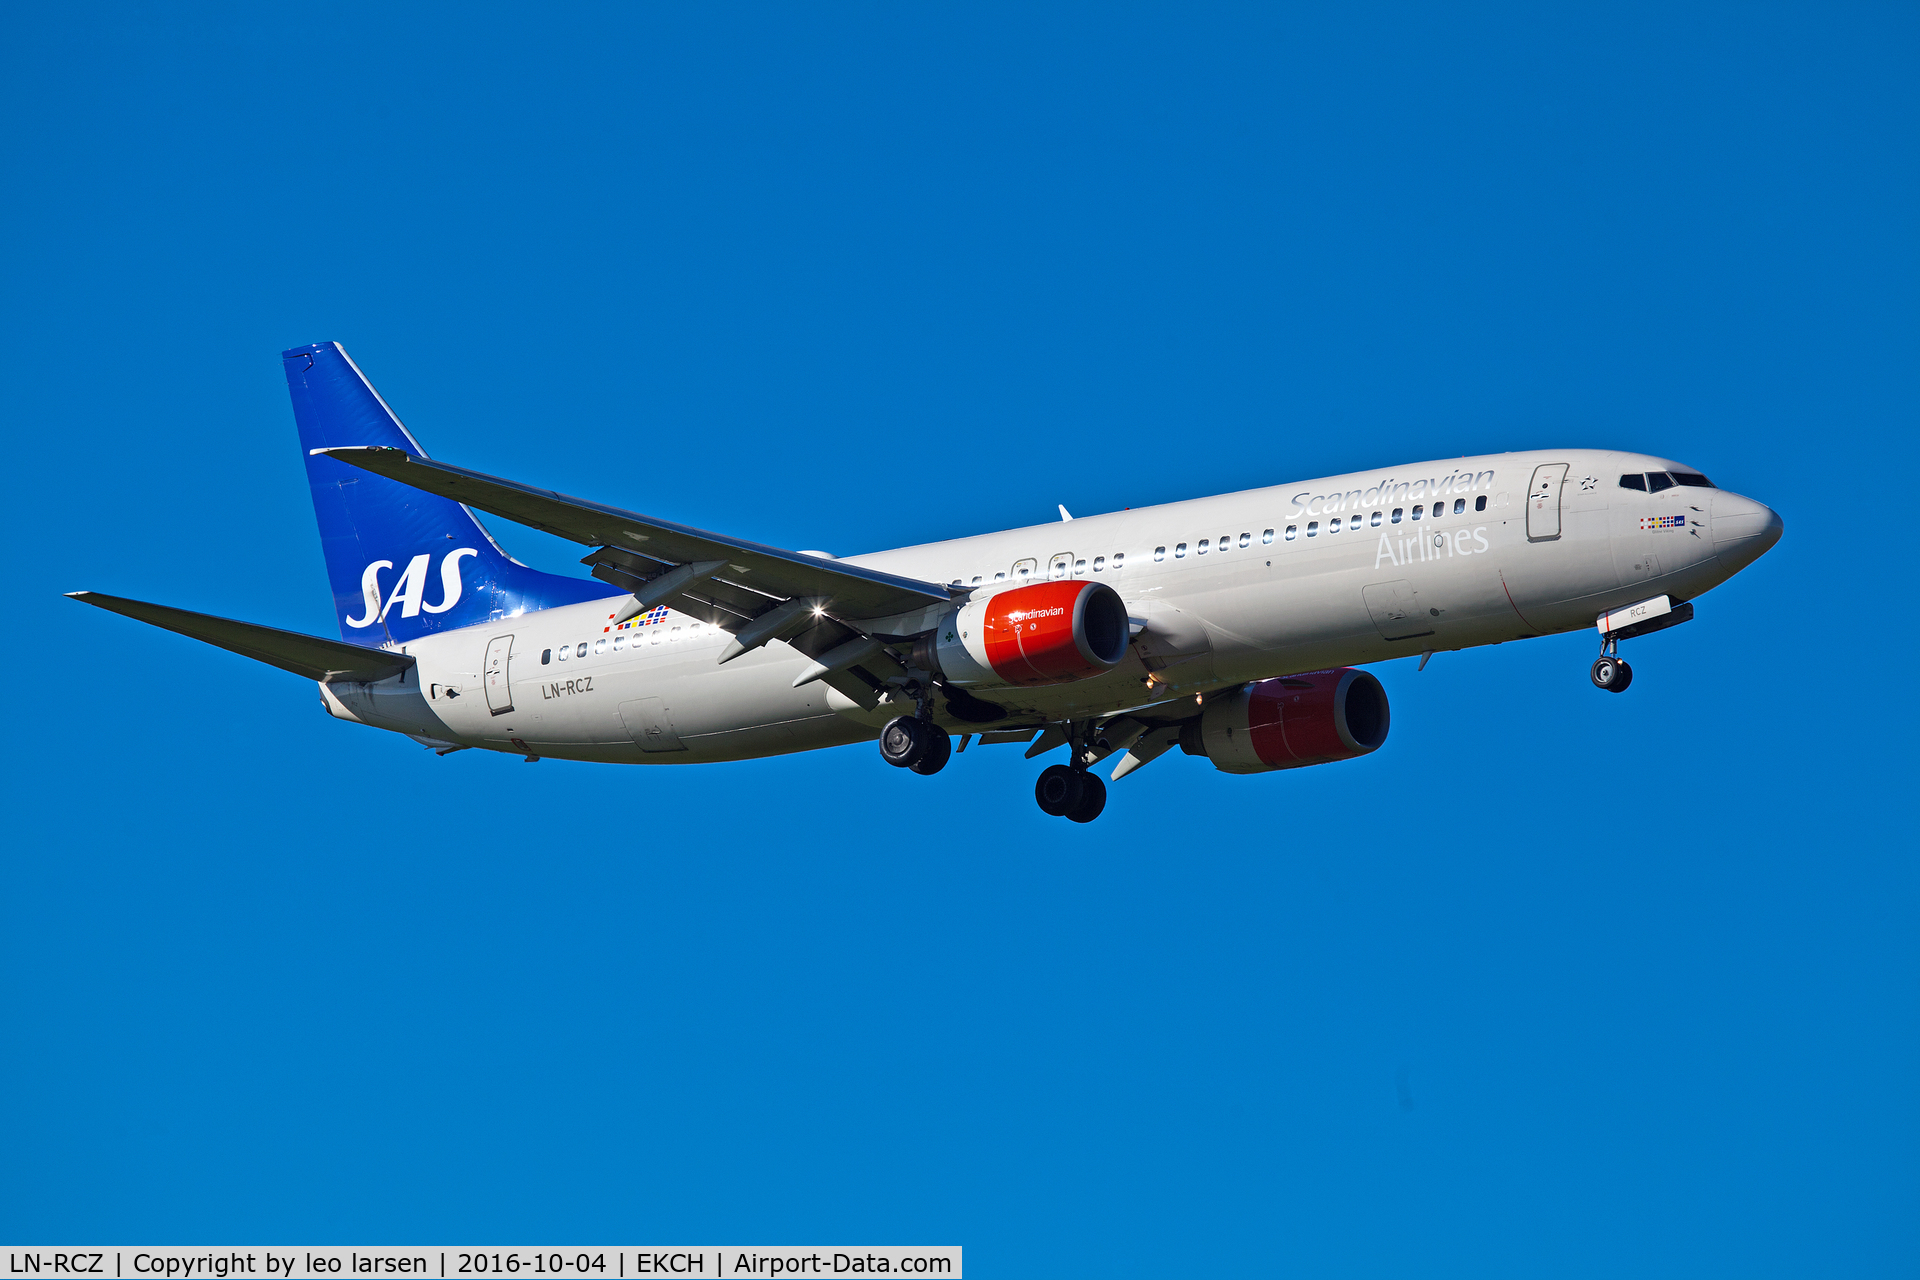 LN-RCZ, 2001 Boeing 737-883 C/N 30197, Copenhagen 4.10.16